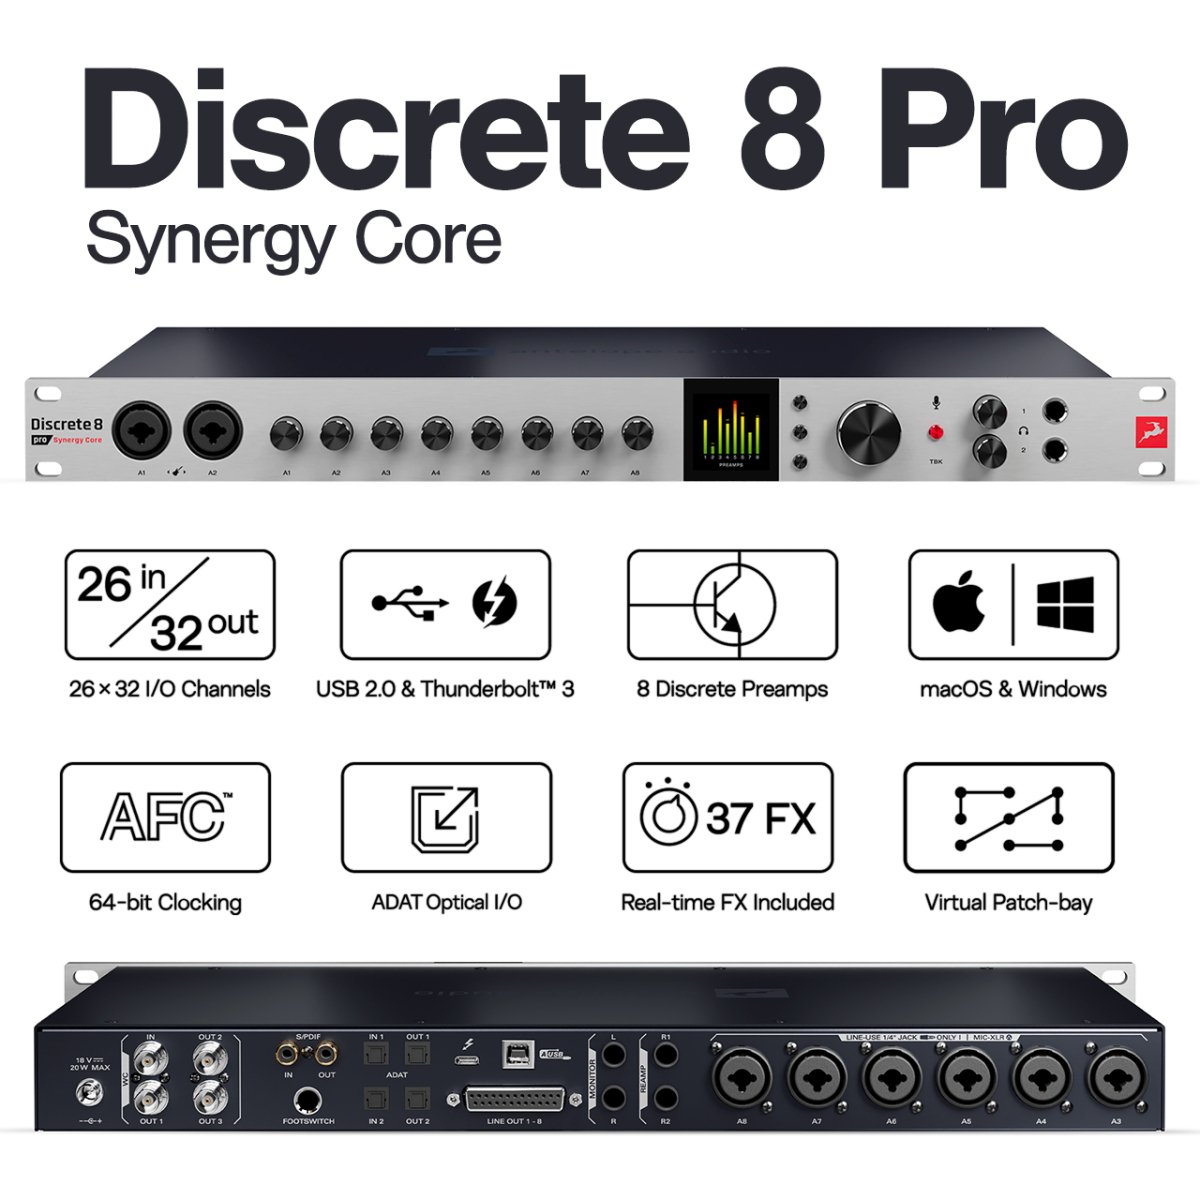 Discrete 8 Pro Synergy Core